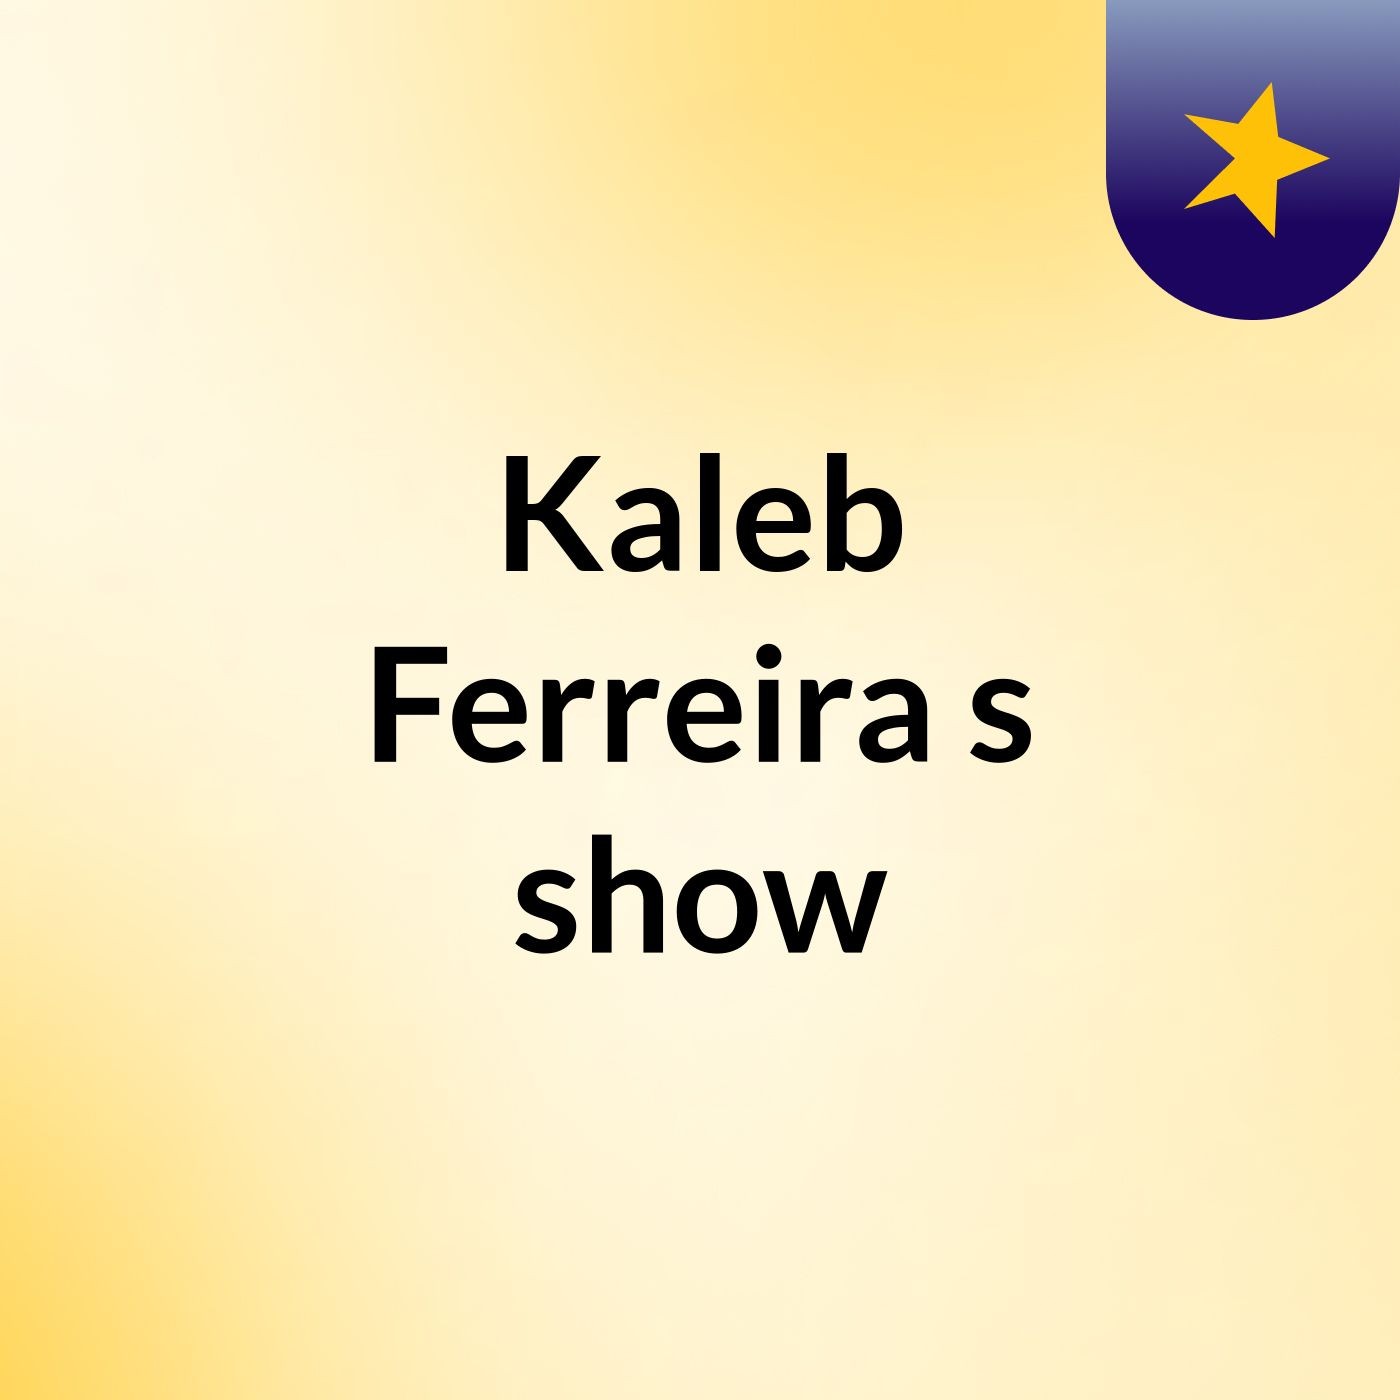 Kaleb Ferreira's show